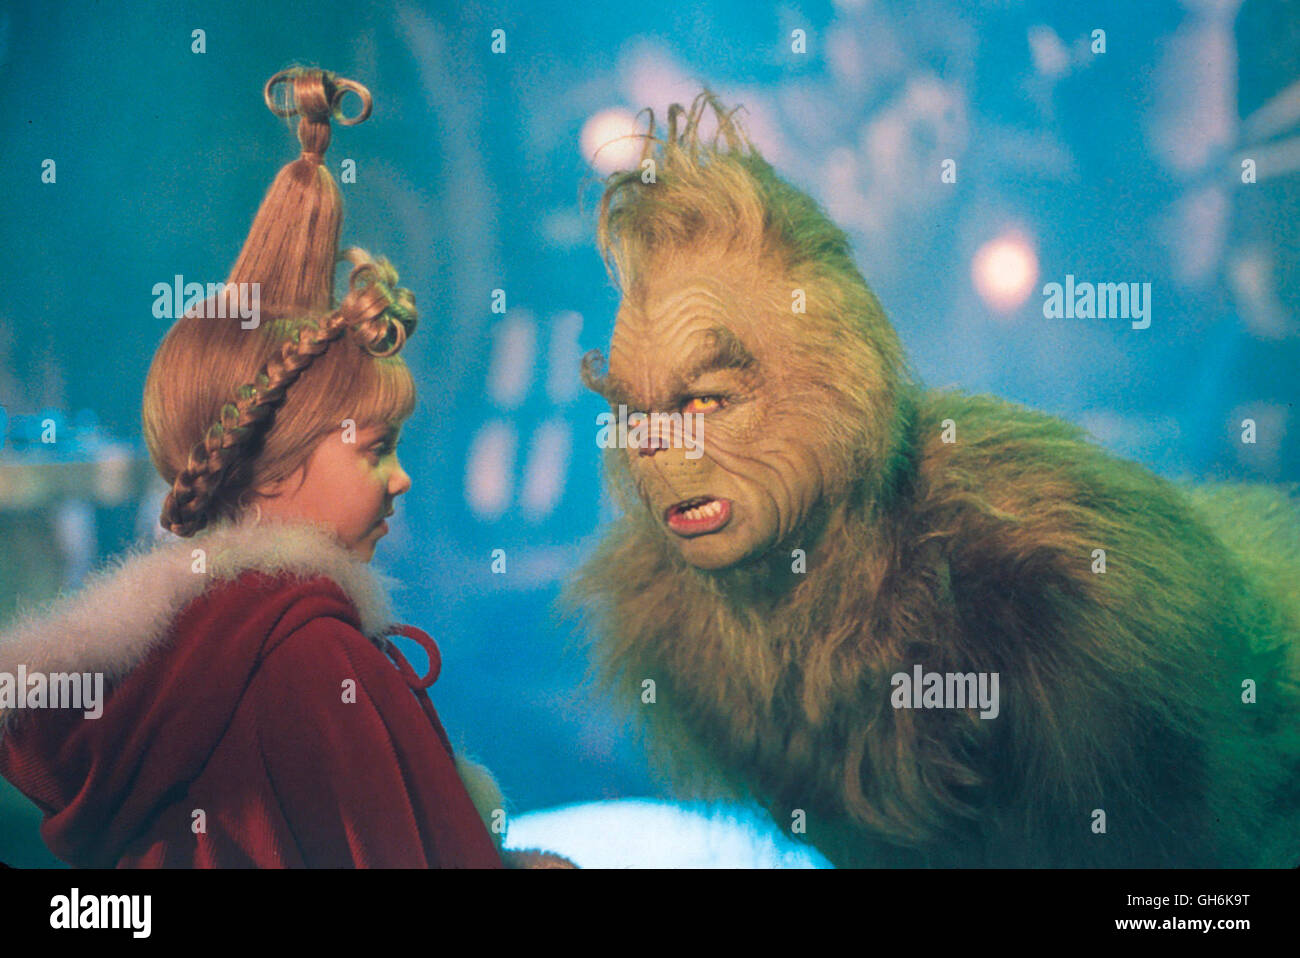 DER GRINCH W.A. / Dr. Seuss' How Grinch Stole Christmas USA 2001 / Ron Howard Auf dem Gipfel des Mount Crumpit schaut ein griesgrämiger Höhlenbewohner, der Grinch (JIM CARREY), auf Whoville hinab, dessen Bewohner aufgeregt ihren Vorbereitungen zum Weihnachtsfest nachgehen. Der Grinch ist angewidert von der Vorfreude der Whos und beschließt der Stadt einen Besuch abzustatten und Weihnachten zu stehlen. Unterwegs begegnet er Cindy Lou Who (TAYLOR MOMMSEN), die sich bei dem ganzen Trubel fragt, was wohl die wahre Bedeutung des Weihnachtsfestes ist. Ebenso versucht sie zu ergründen, warum der Stock Photo